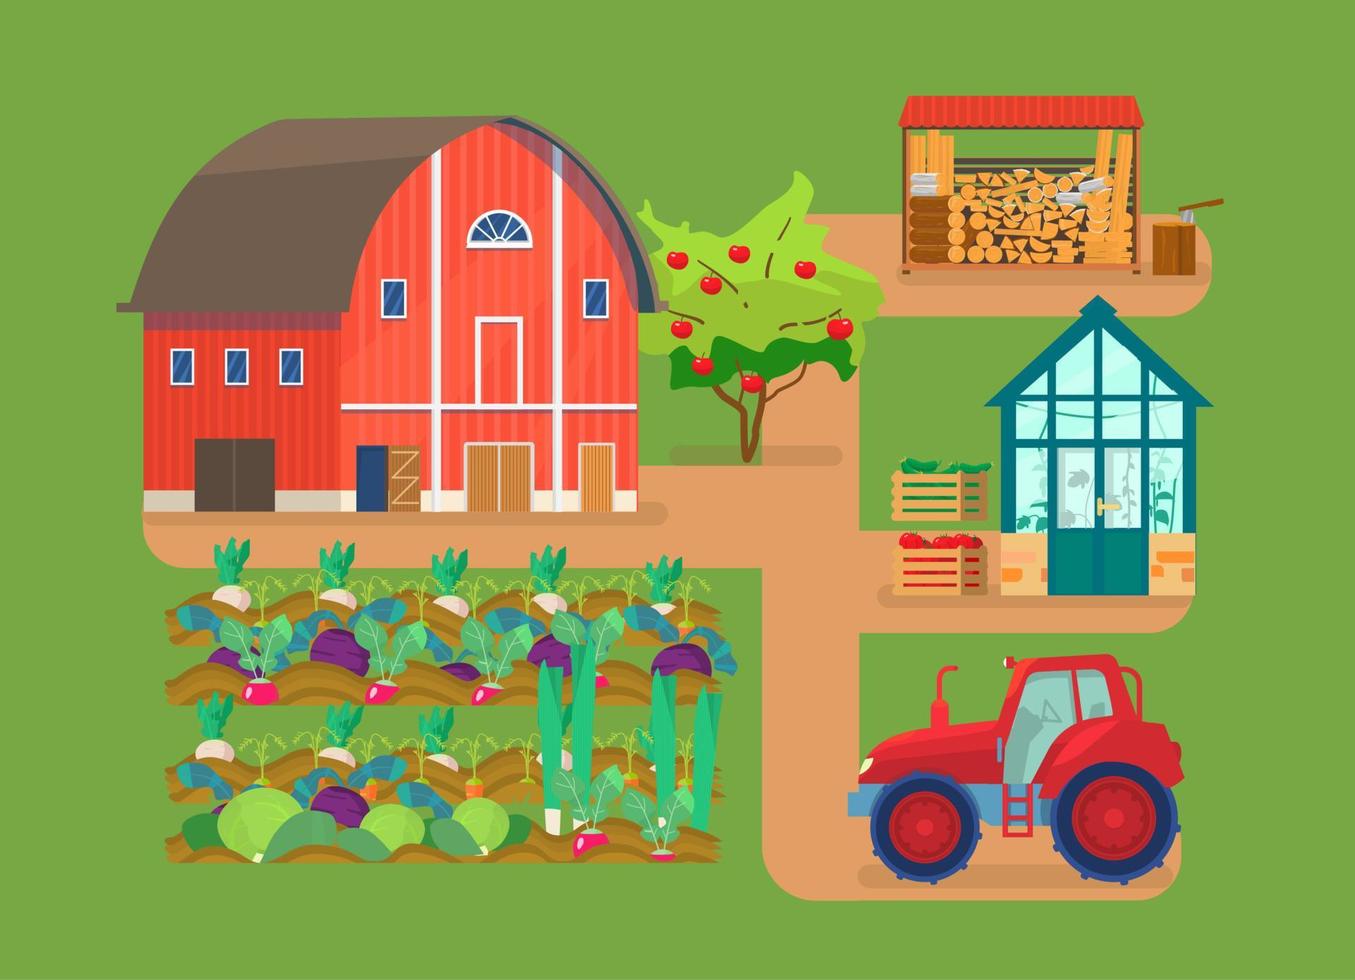 illustrazione vettoriale della scena della fattoria. fienile rosso, aiuole, trattore, serra con piante, catasta di legna, legna da ardere, melo, cassette con verdure.